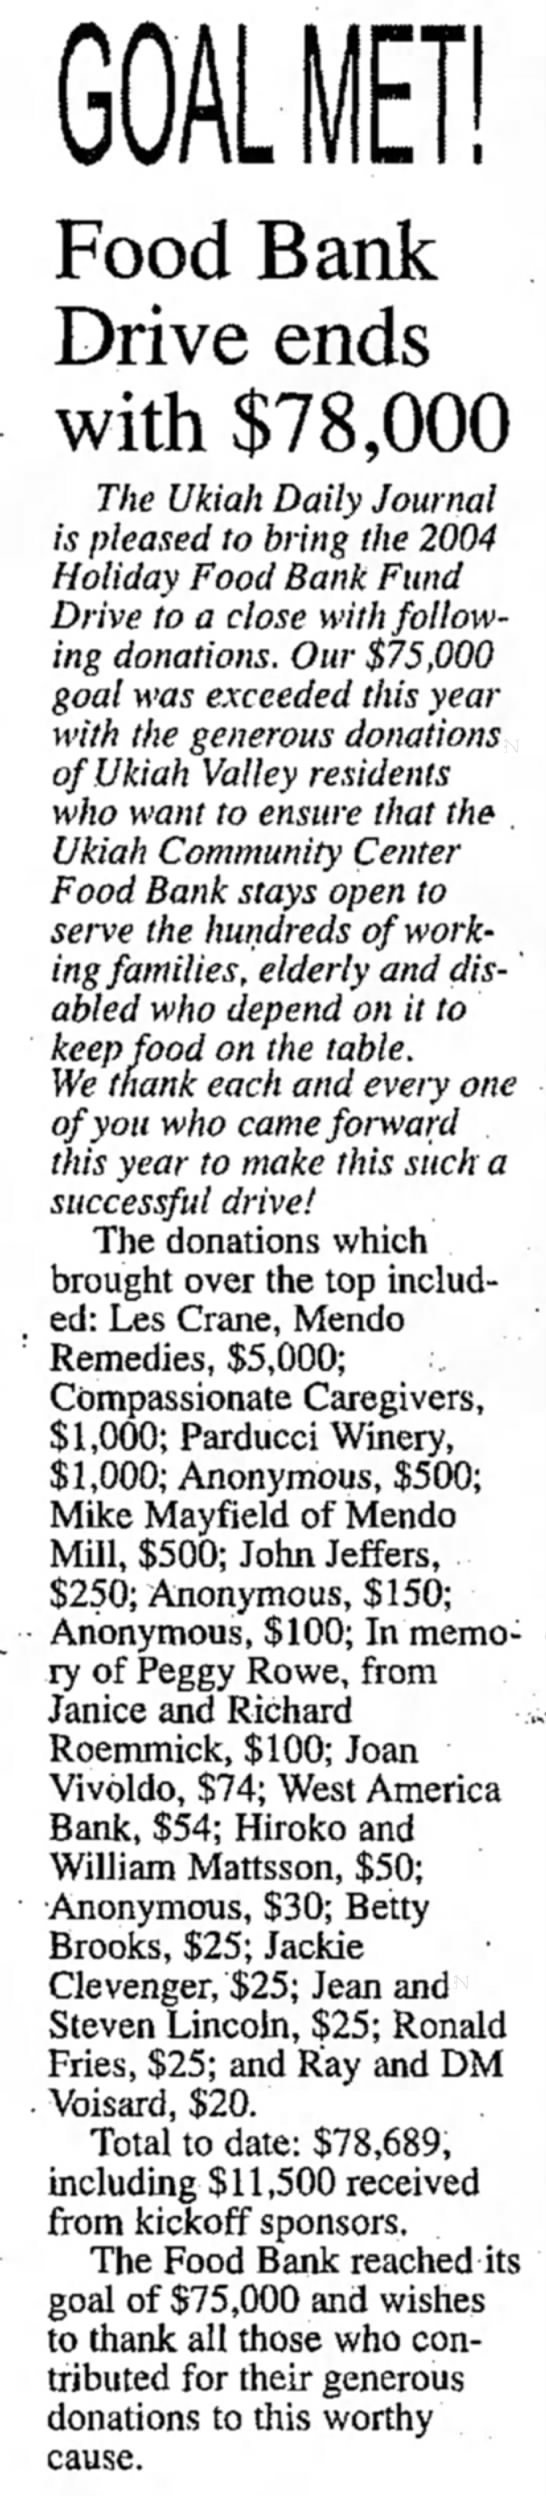 Les Crane $5,000 donation - 